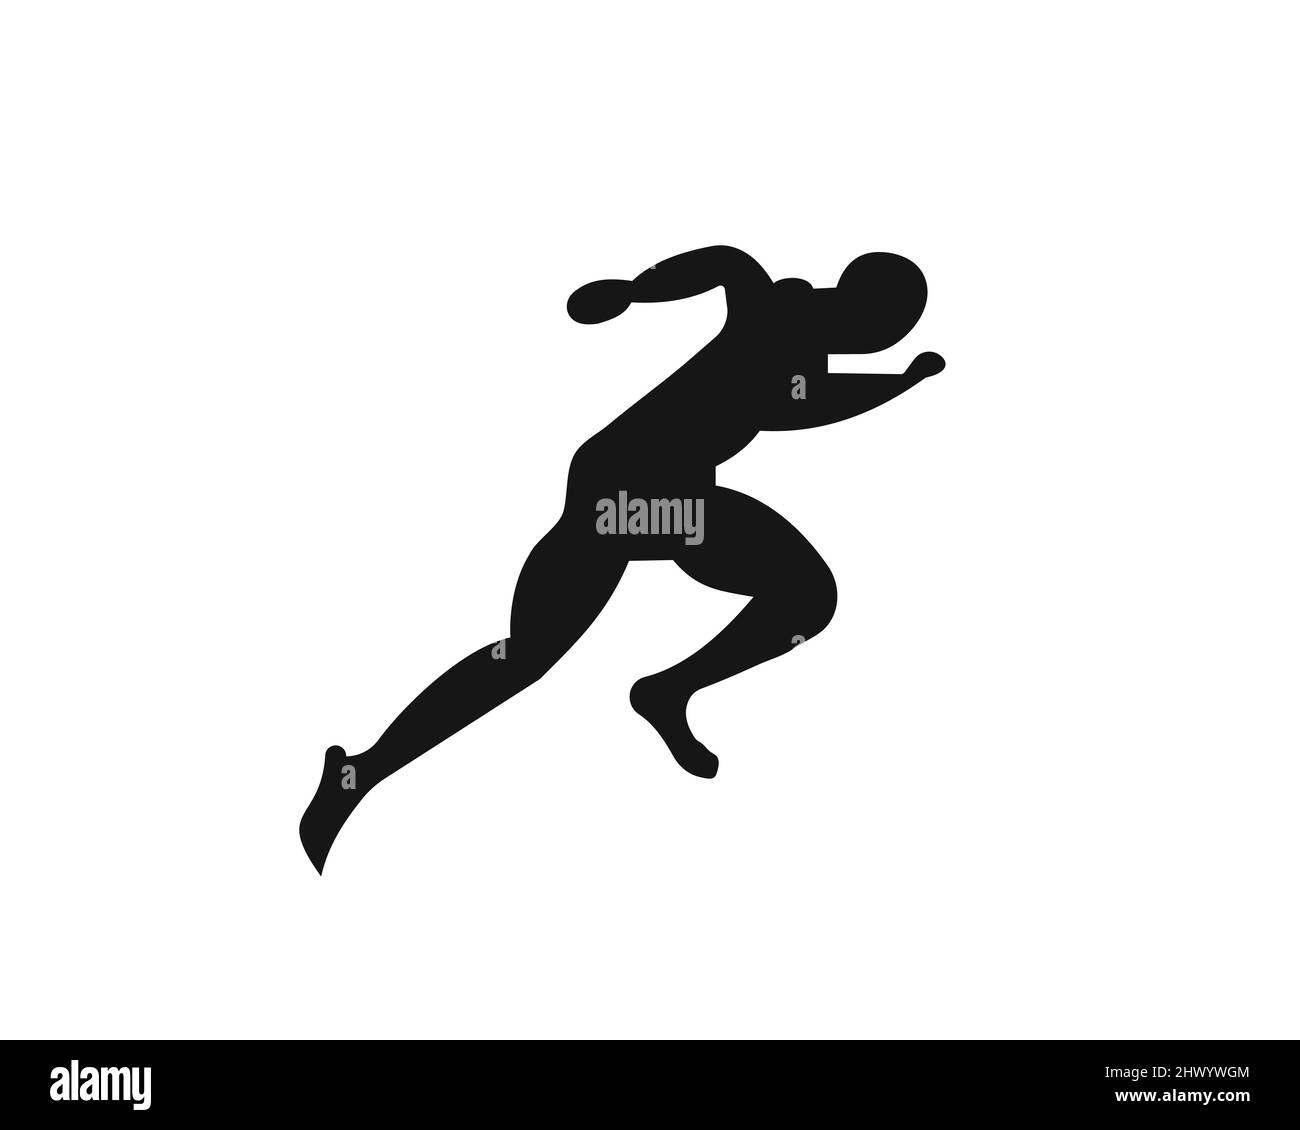 Sport Running Man Vorderansicht. Running man Silhouette Logo Template für Marathon, Template, Running Club oder Sports Club Logo Stock Vektor